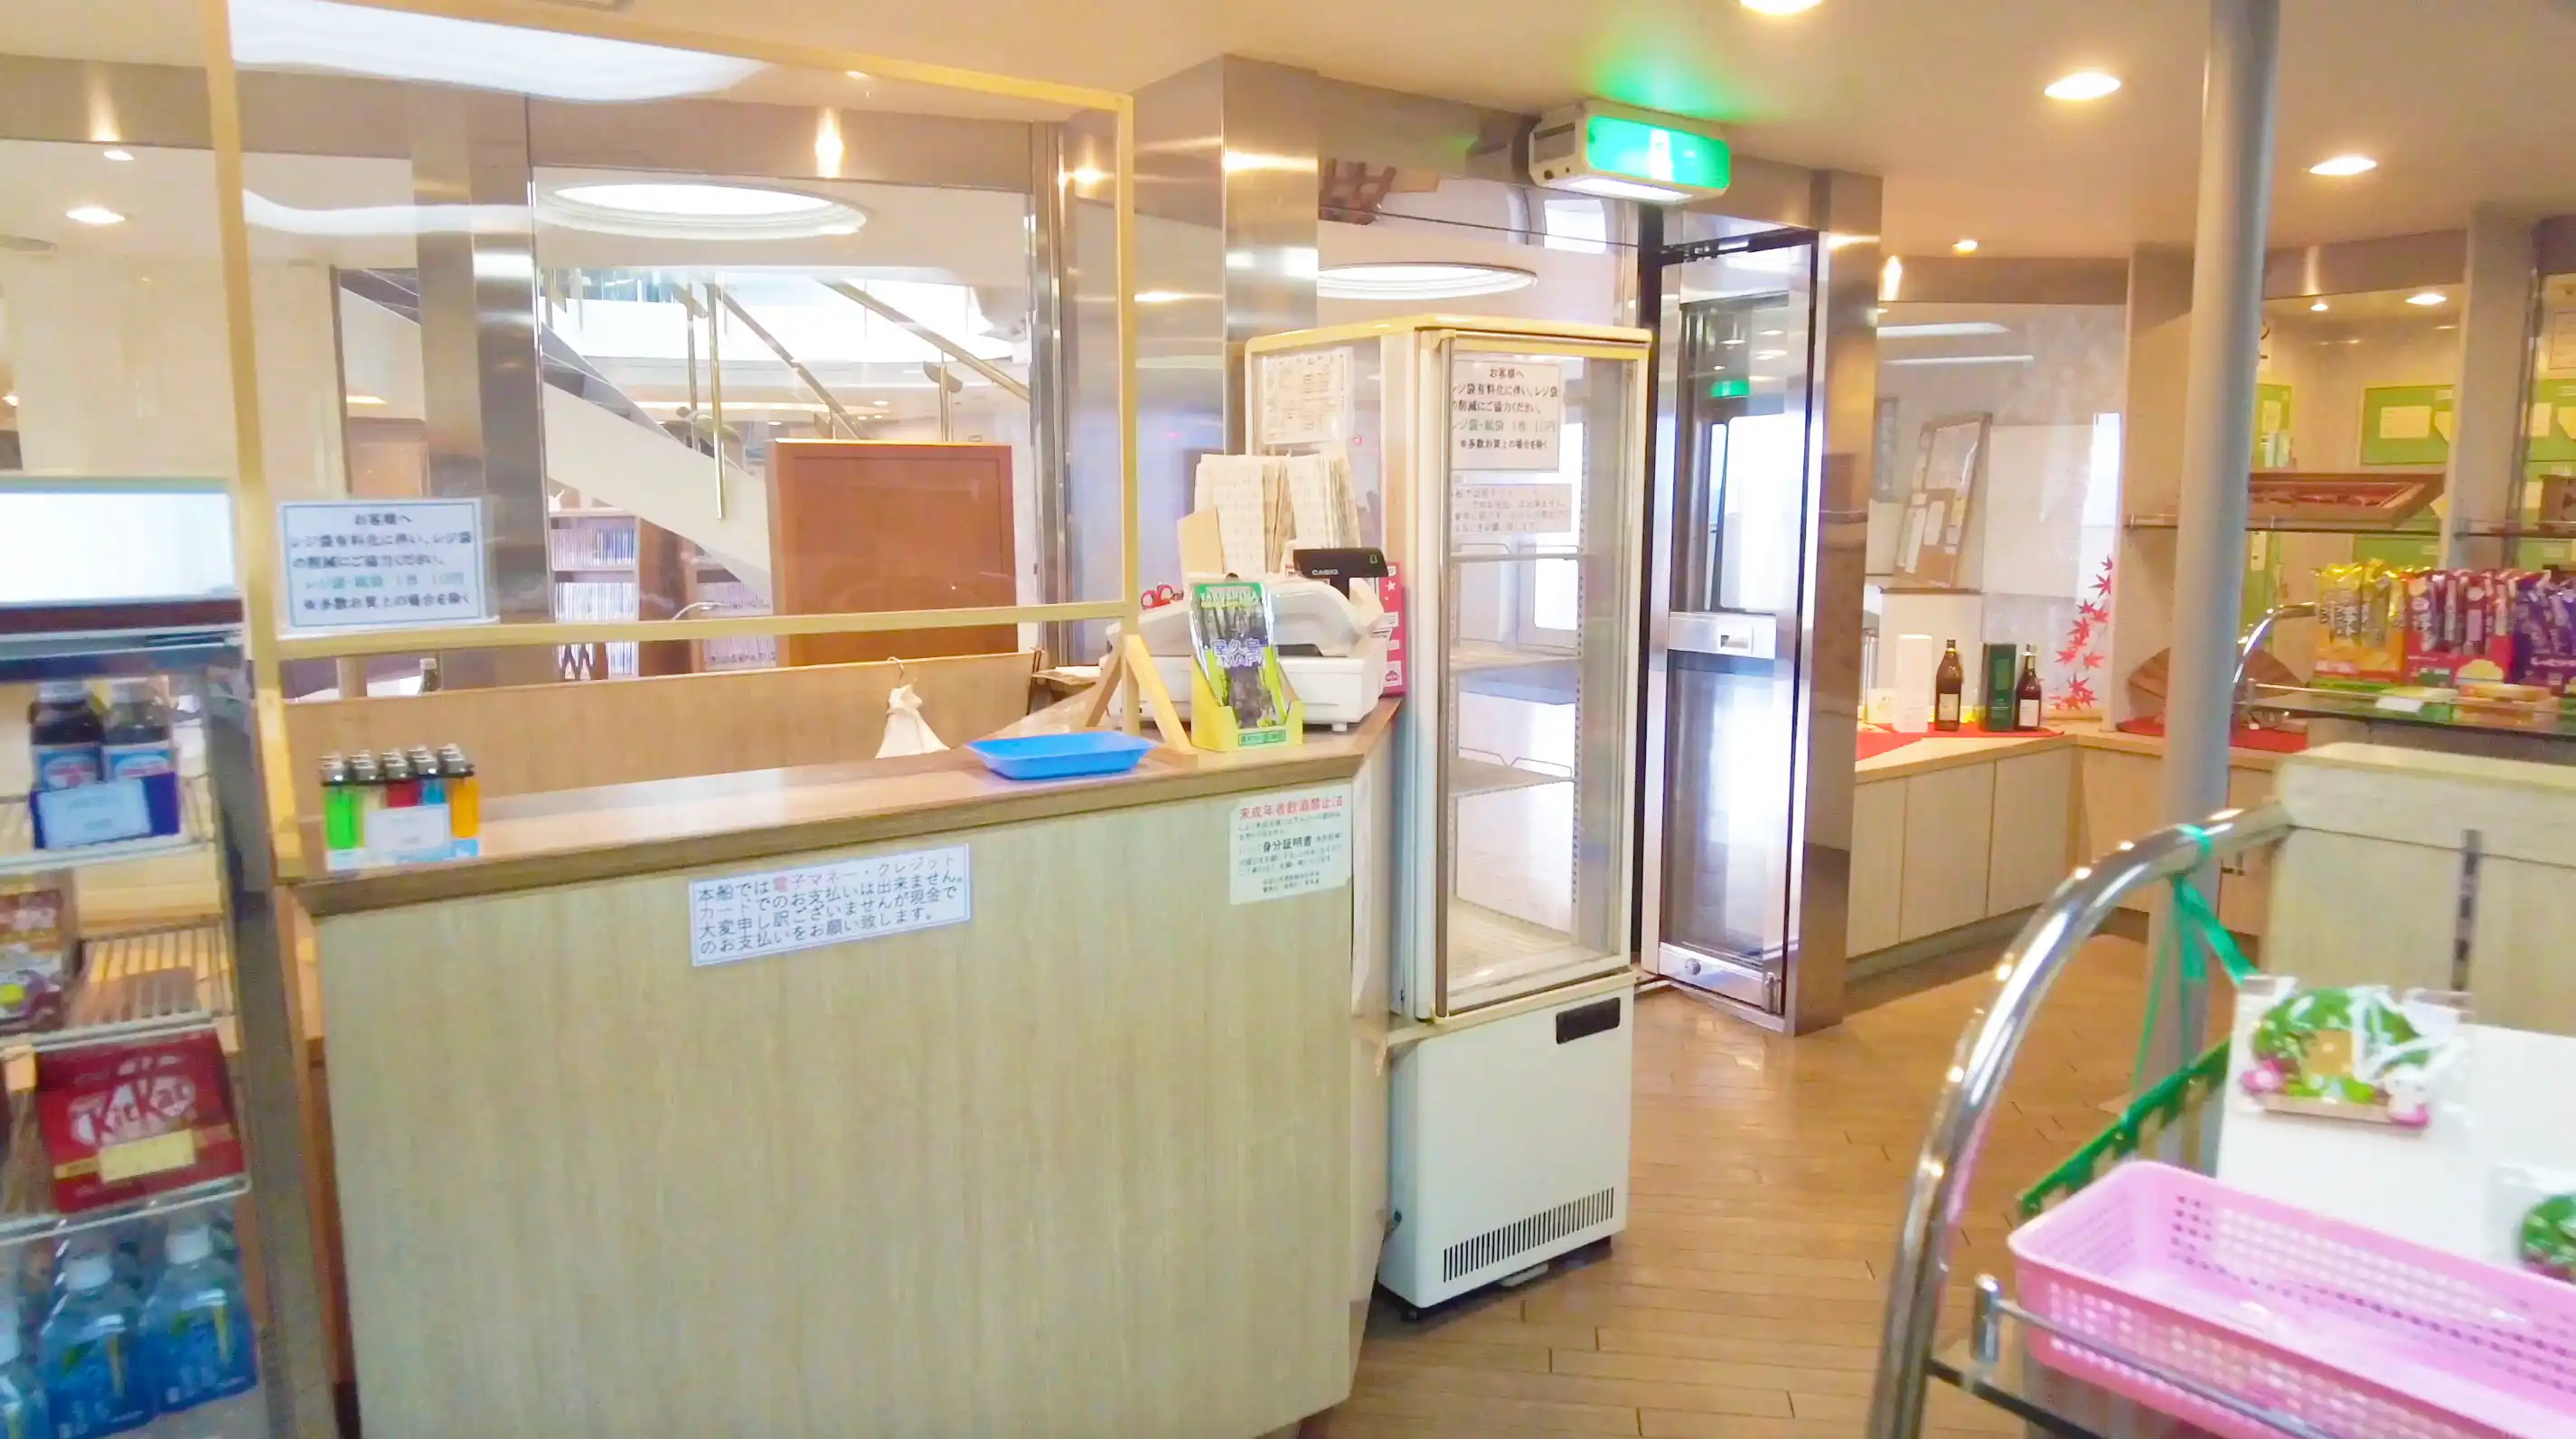 折田汽船屋久岛2号渡轮上的店铺收银台。